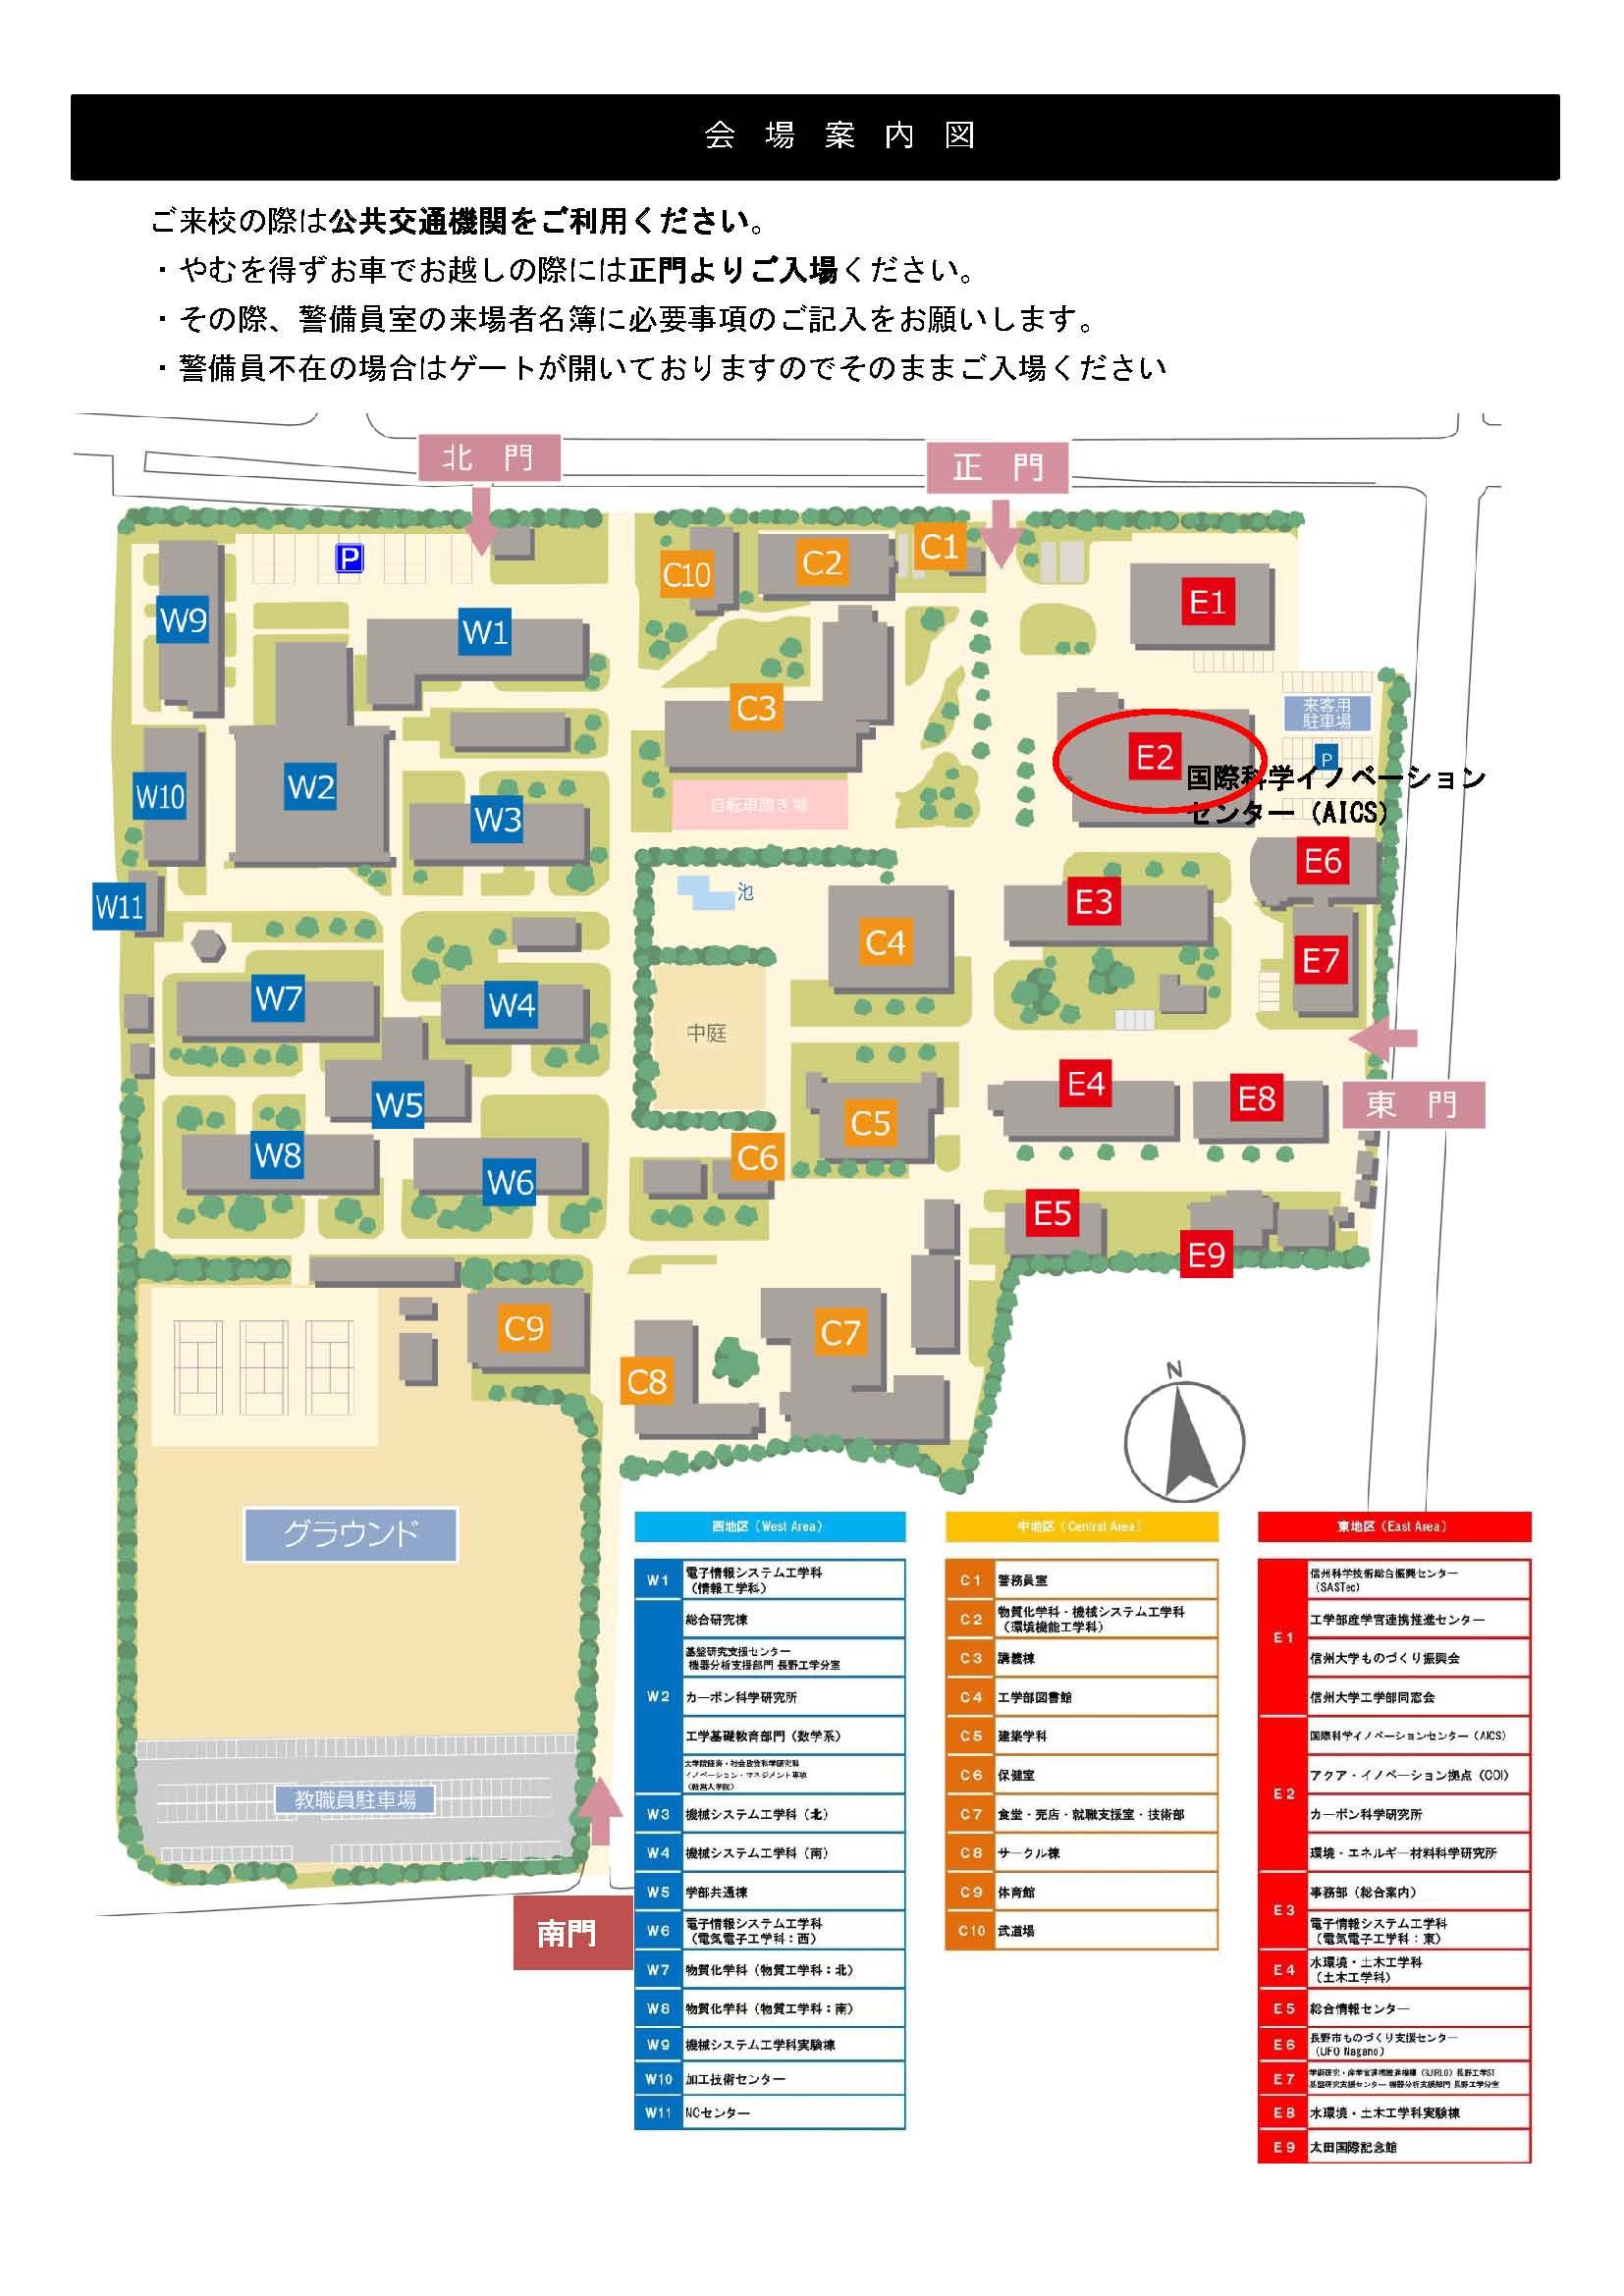 http://www.shinshu-u.ac.jp/faculty/engineering/faid/bed3a307caf43b372617e2bc4d6daa6d_2.jpg